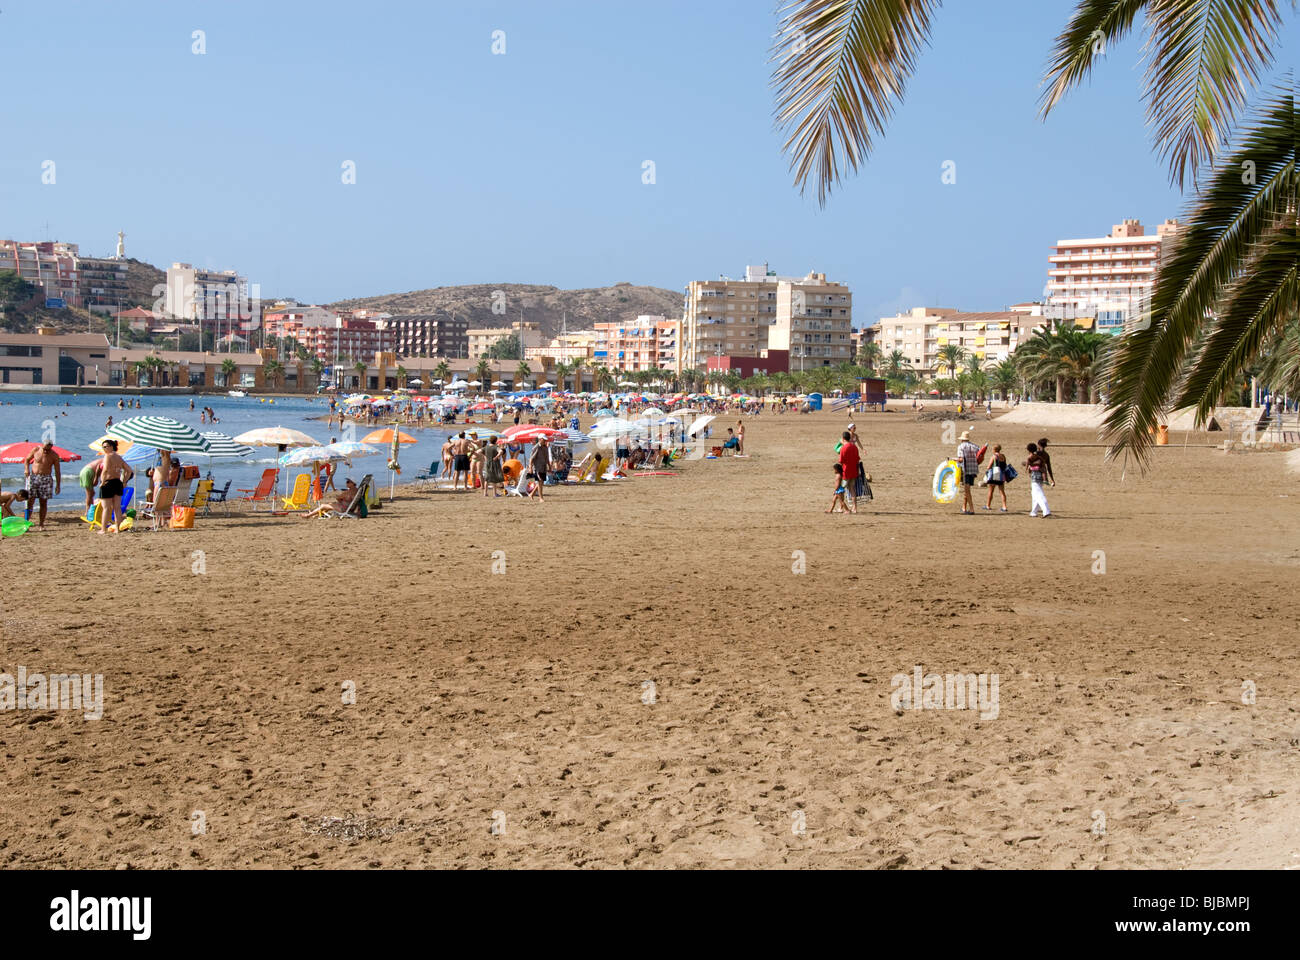 A beach shot of Puerto de Mazarron Murcia Costa Calida Spain Europe Stock Photo